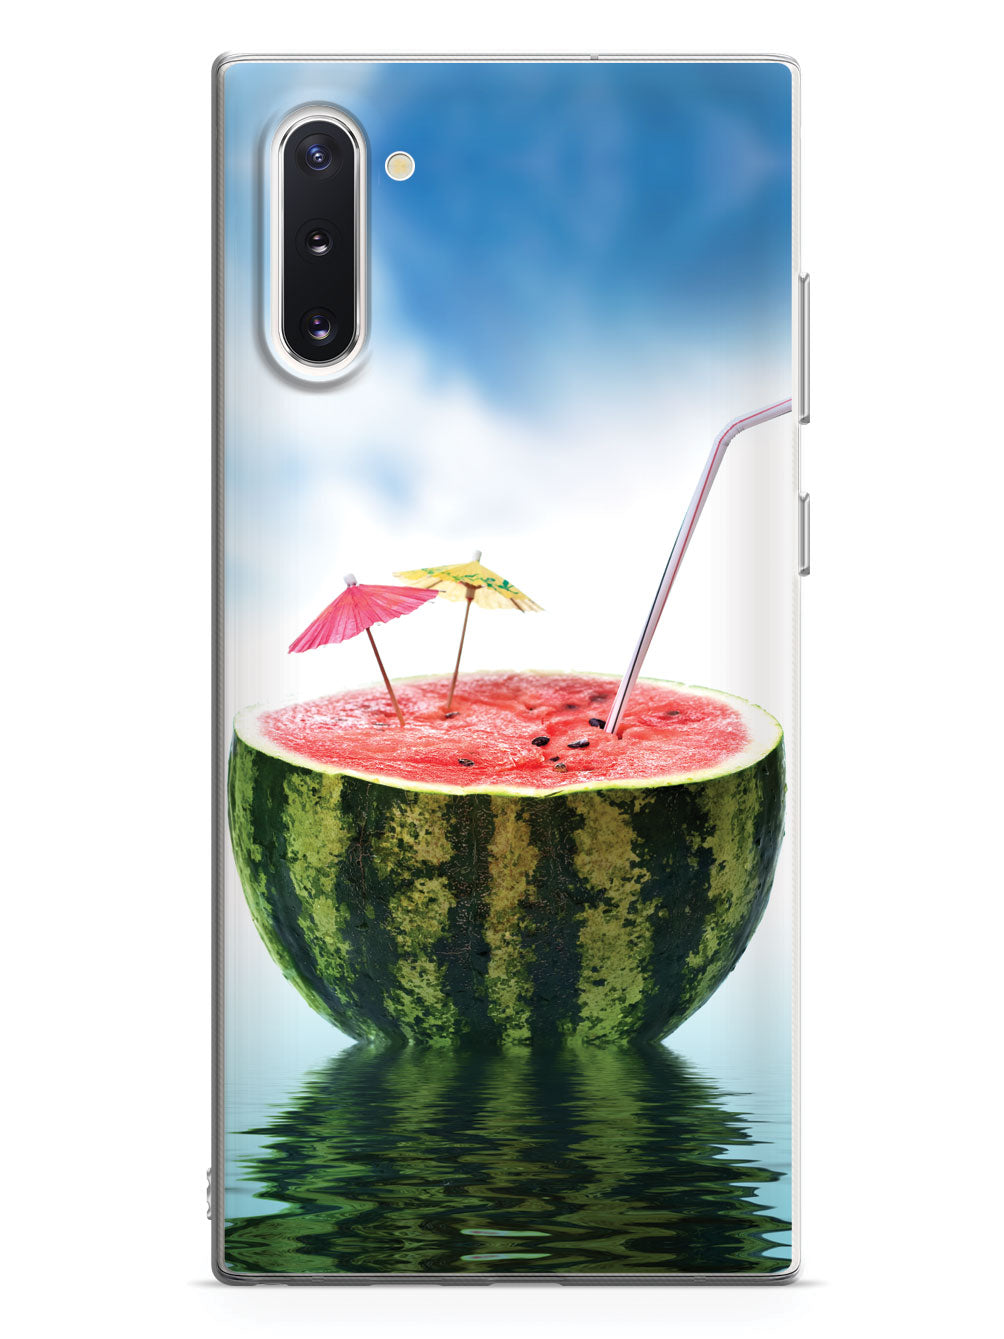 Watermelon Summer Drink - Vacation - White Case